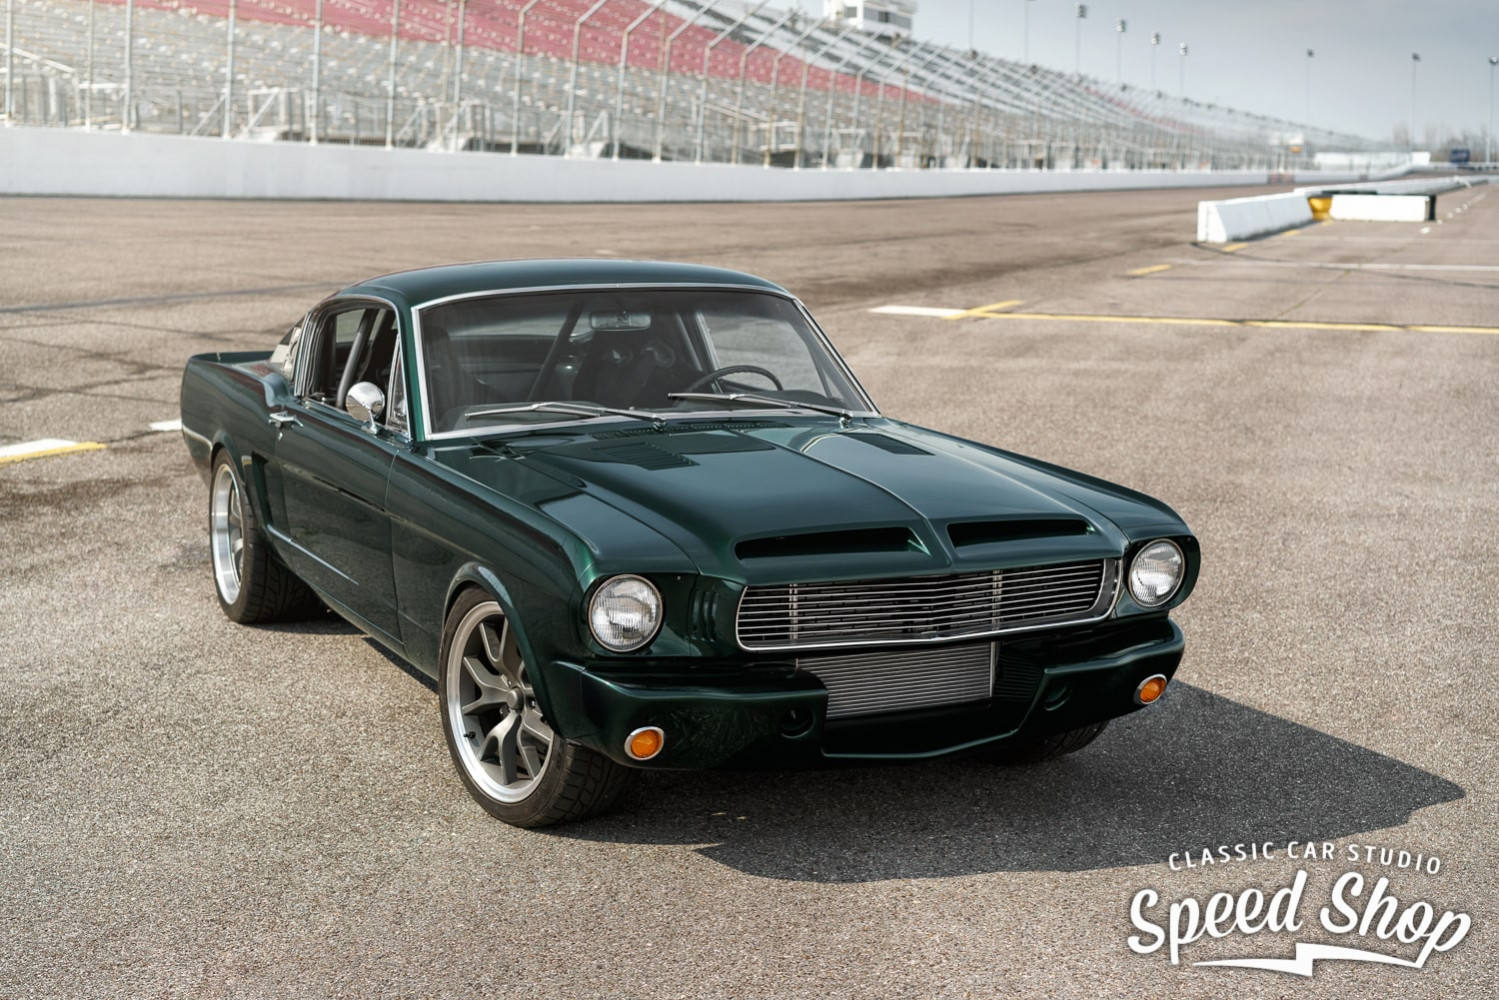 İnanılmaz değişim: 1965 model Mustang restorasyonu